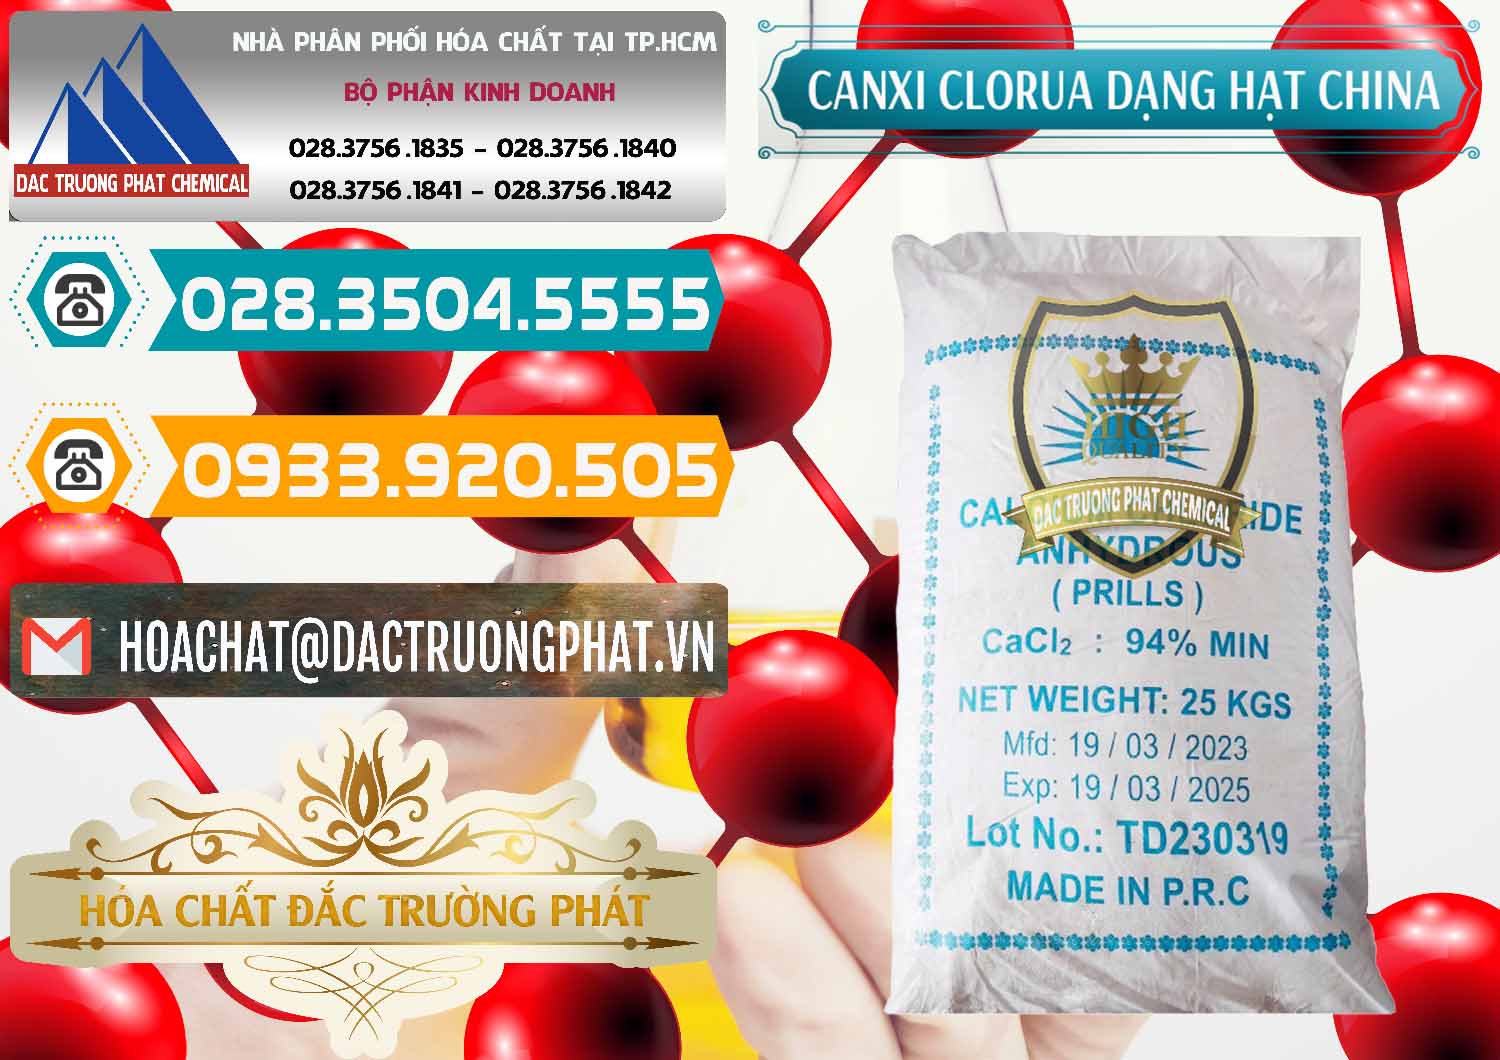 Cty chuyên bán _ phân phối CaCl2 – Canxi Clorua 94% Dạng Hạt Trung Quốc China - 0373 - Đơn vị chuyên phân phối & cung ứng hóa chất tại TP.HCM - congtyhoachat.vn